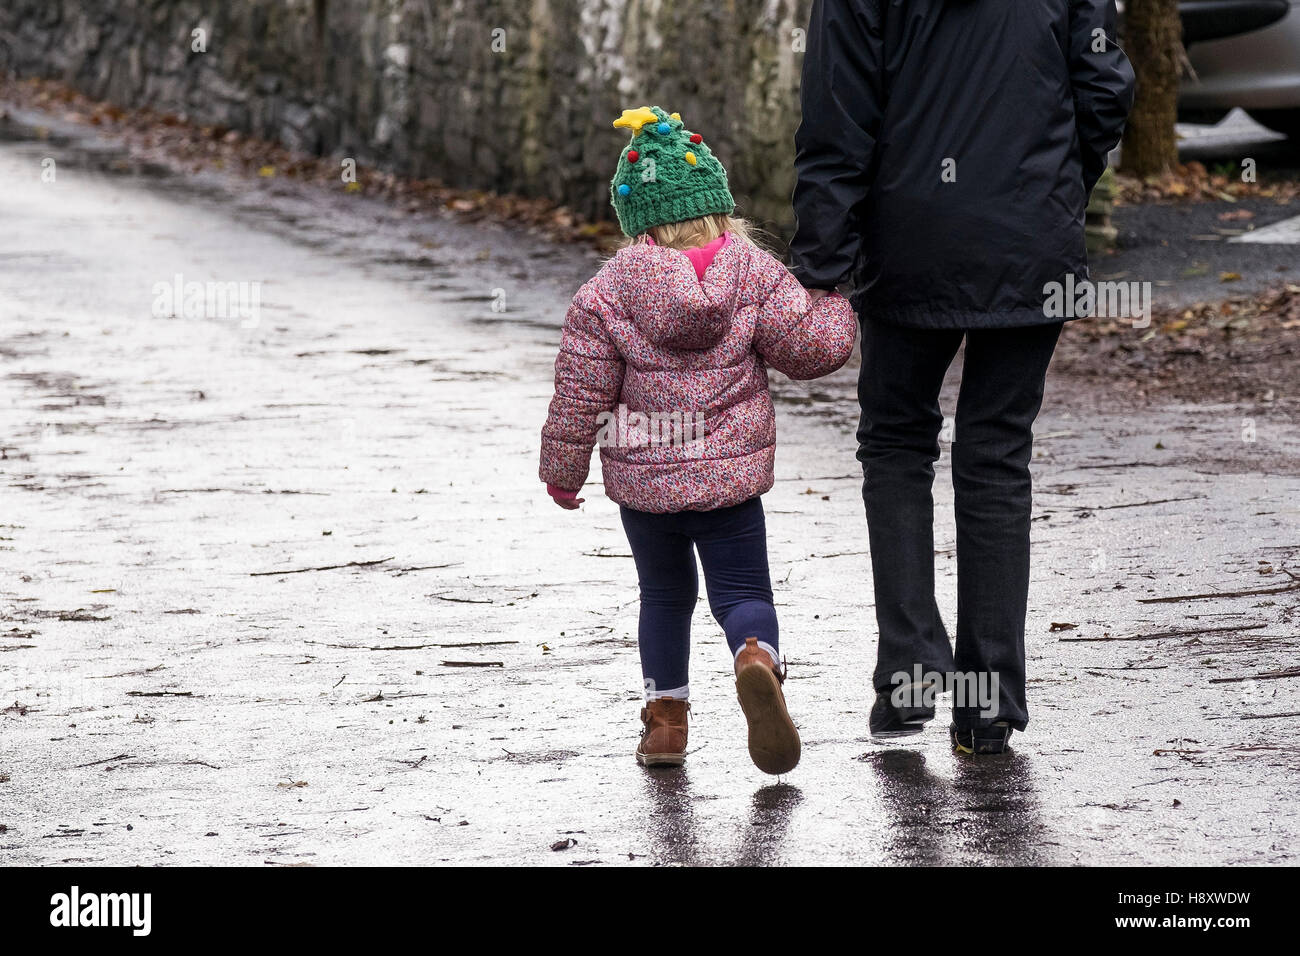 Eine Straße hinunter ein Kind und ein Erwachsener, hand in hand gehen. Stockfoto